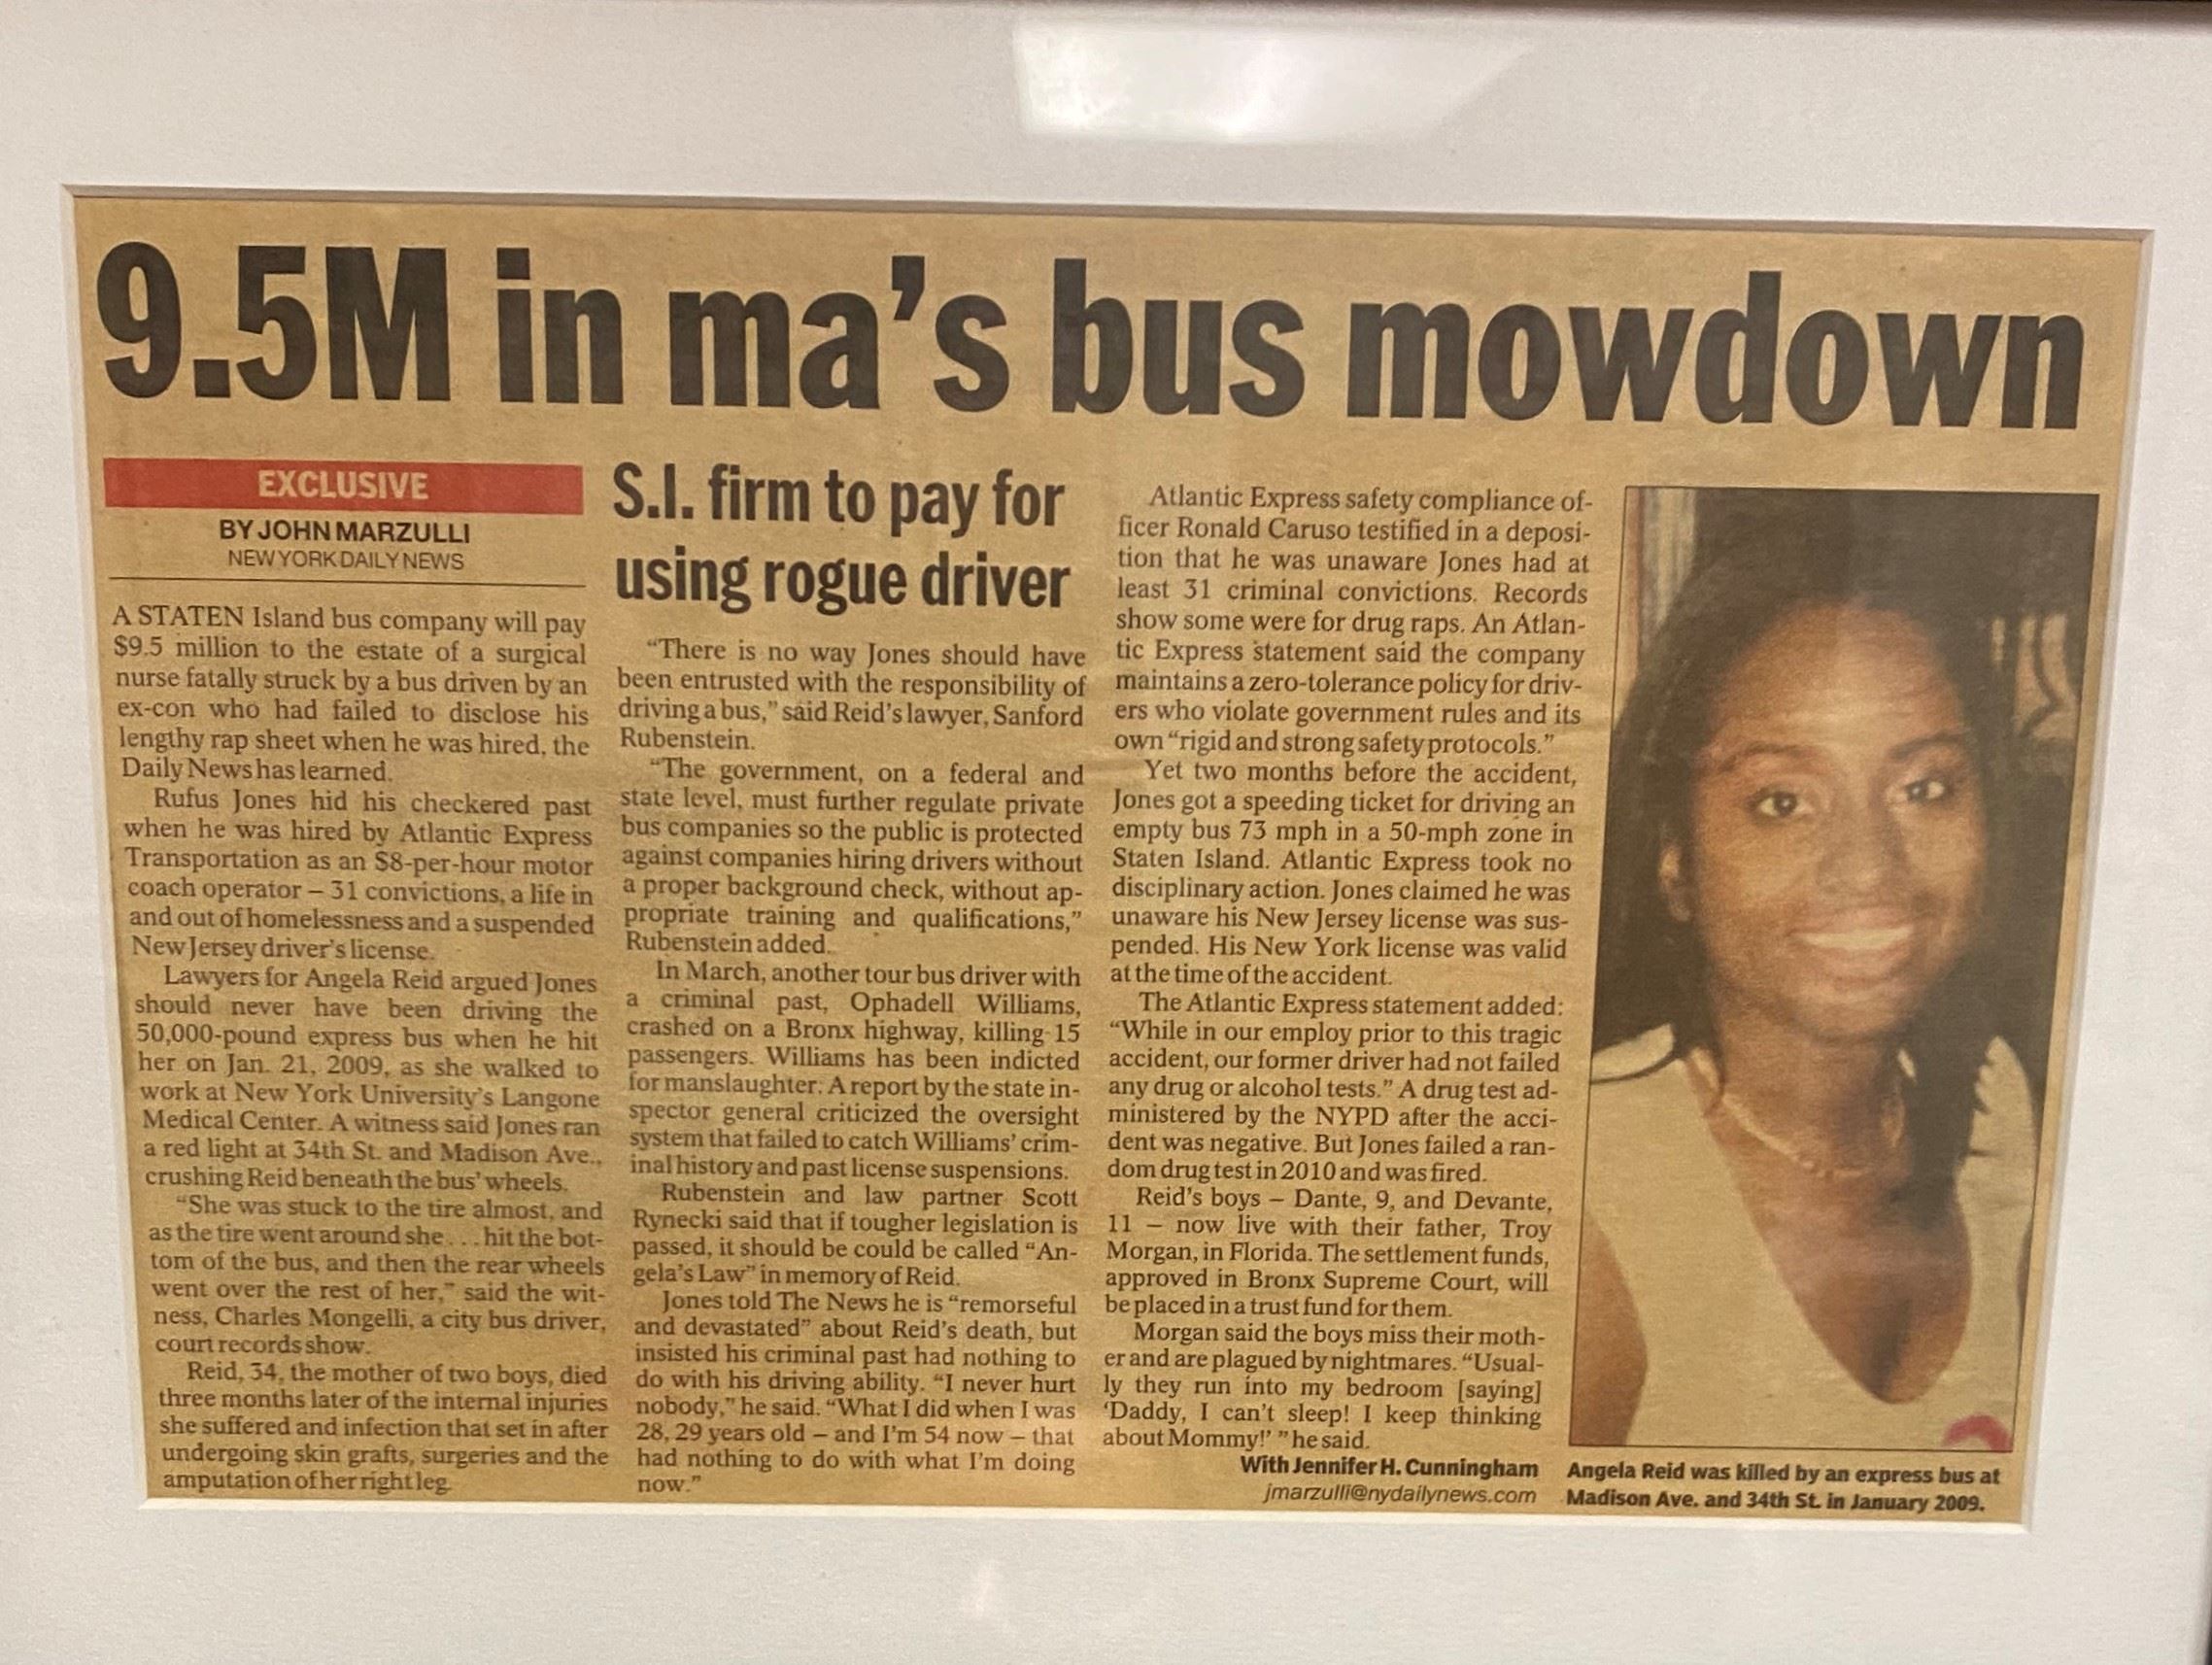 $9.5M in Bus Mowdown